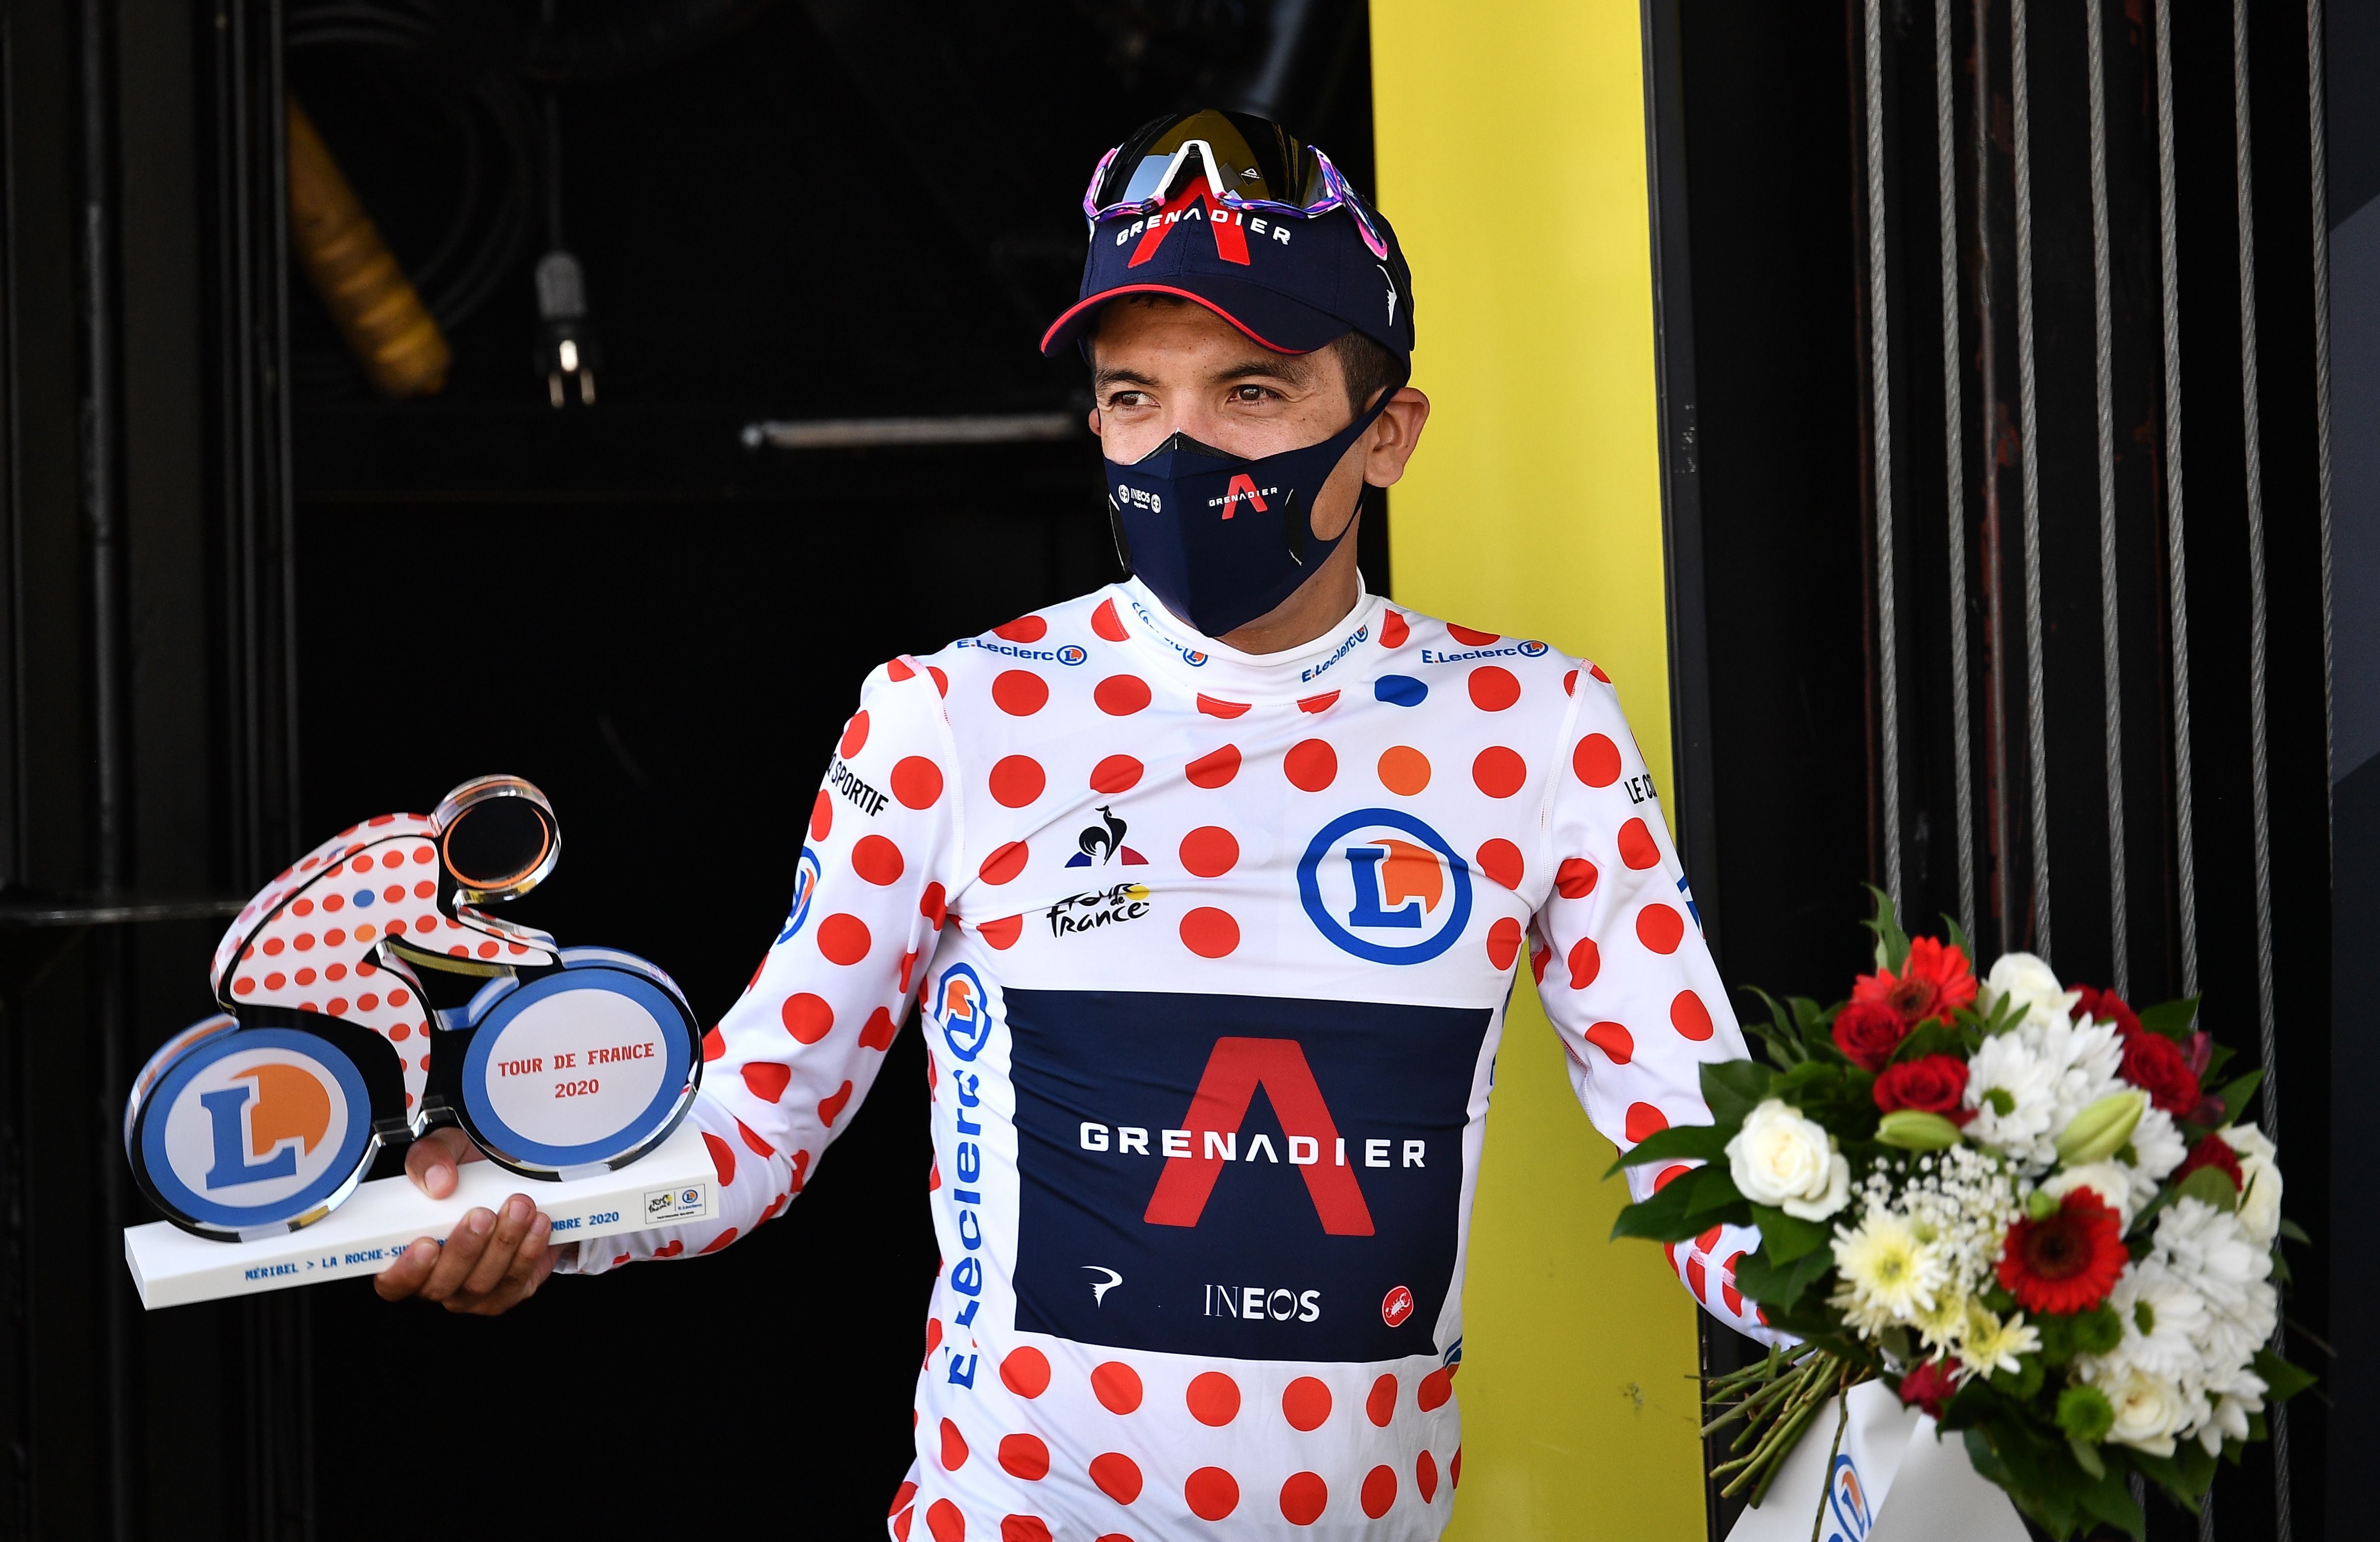 Le Tour de France tamaño 6 meses diseño del maillot del líder de la clasificación de la montaña del Tour de Francia Pijama oficial para bebé color blanco